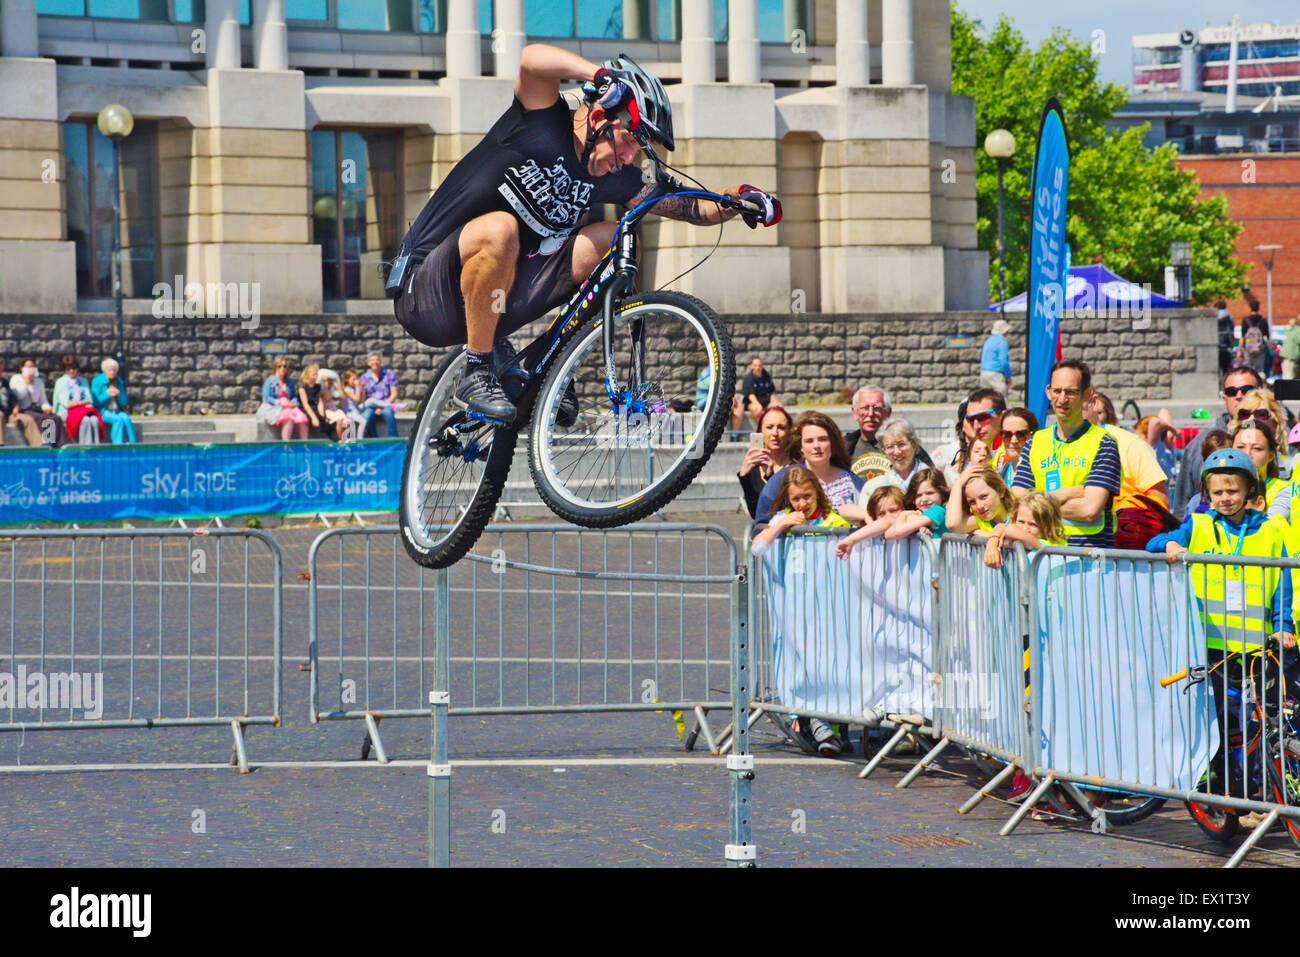 Stunt cyclist jumping un pôle à Sky Ride bike event, Bristol, Royaume-Uni Banque D'Images